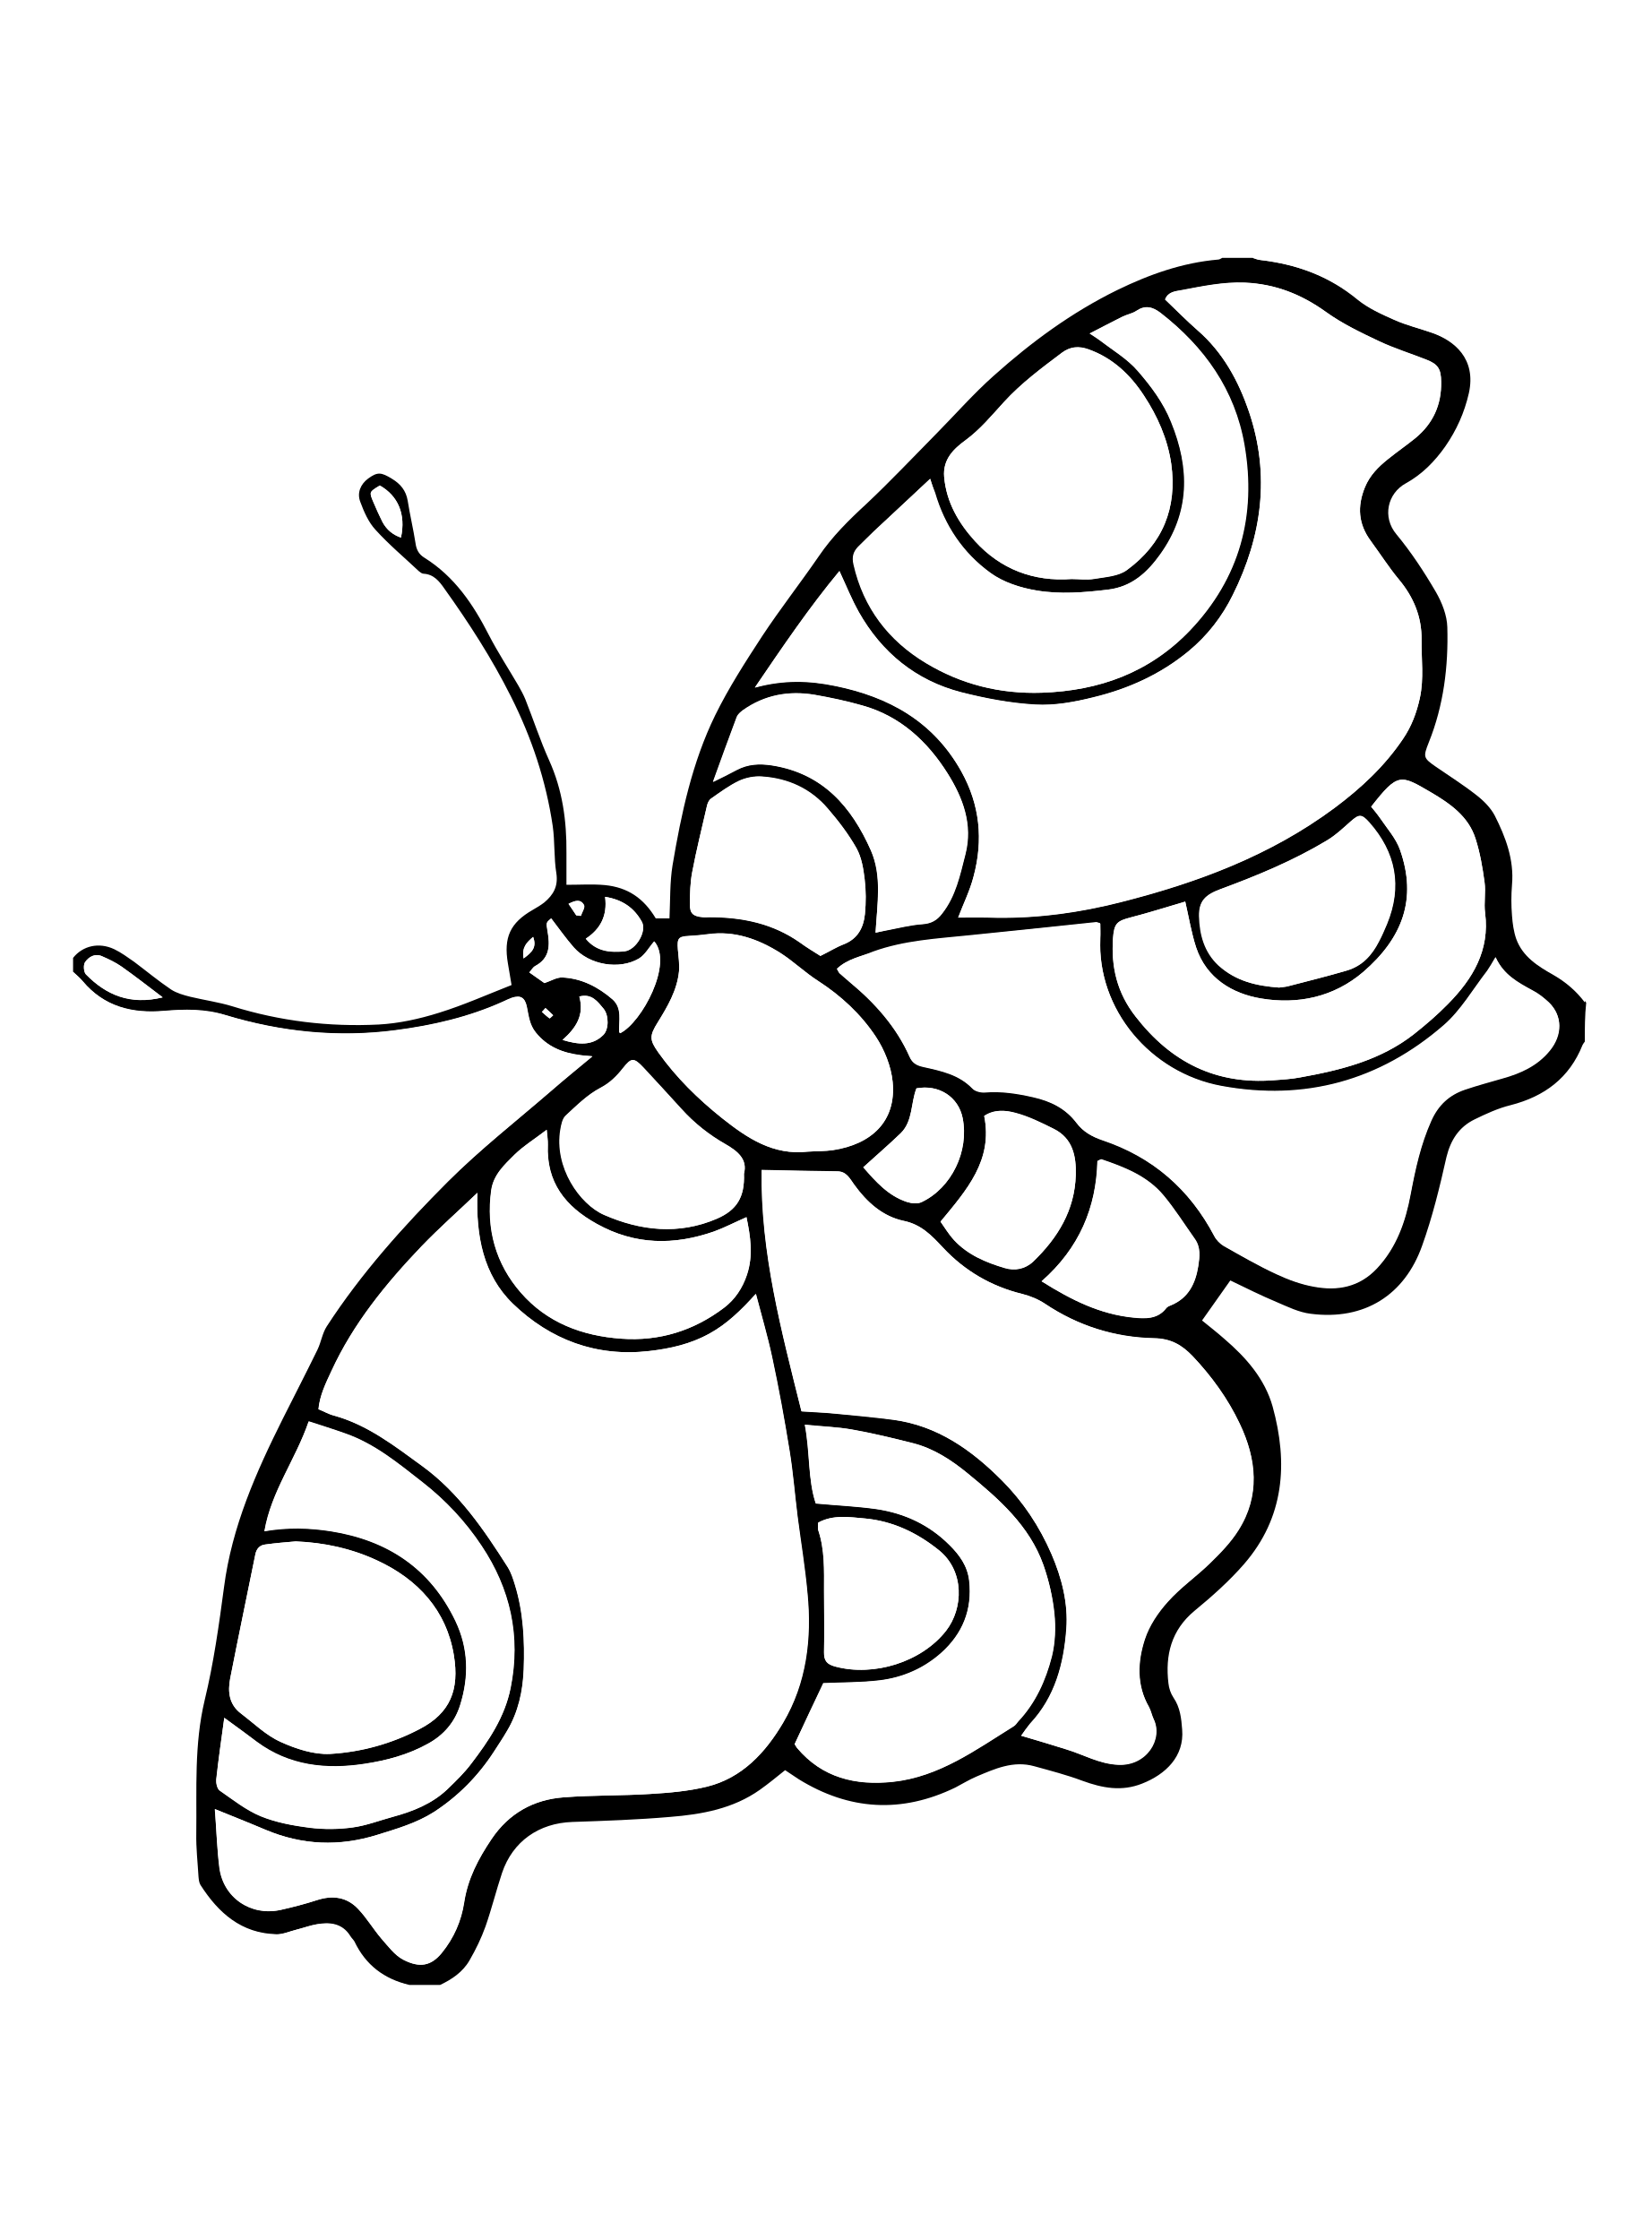 Раскраска насекомые для детей 7 лет. Насекомые. Раскраска. Насекомые раскраска для детей. Раскраска "бабочки". Раскраска насекомые для малышей.